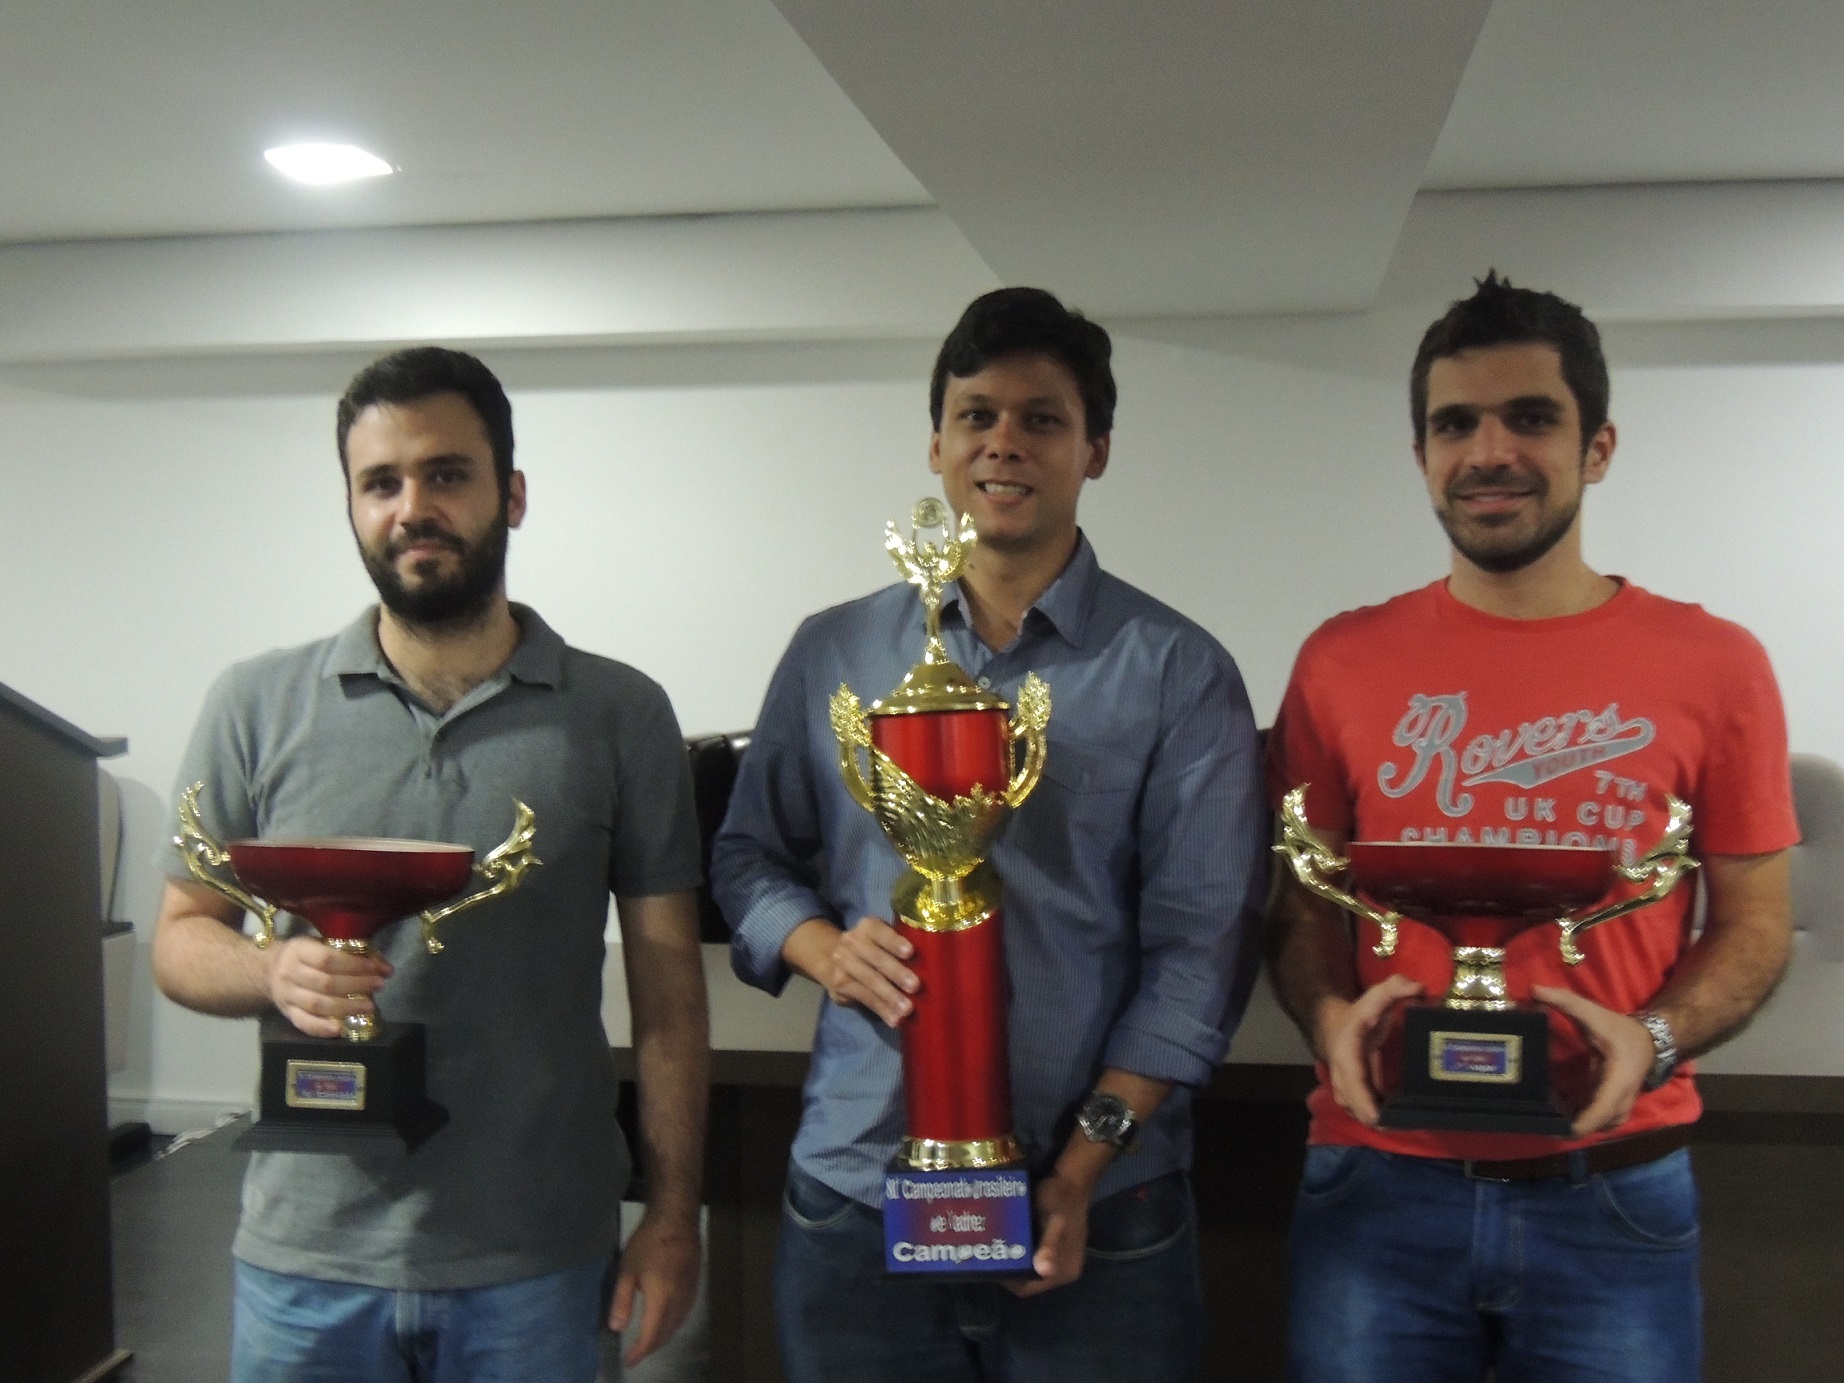 rafael leitão xadrez campeonato brasileiro